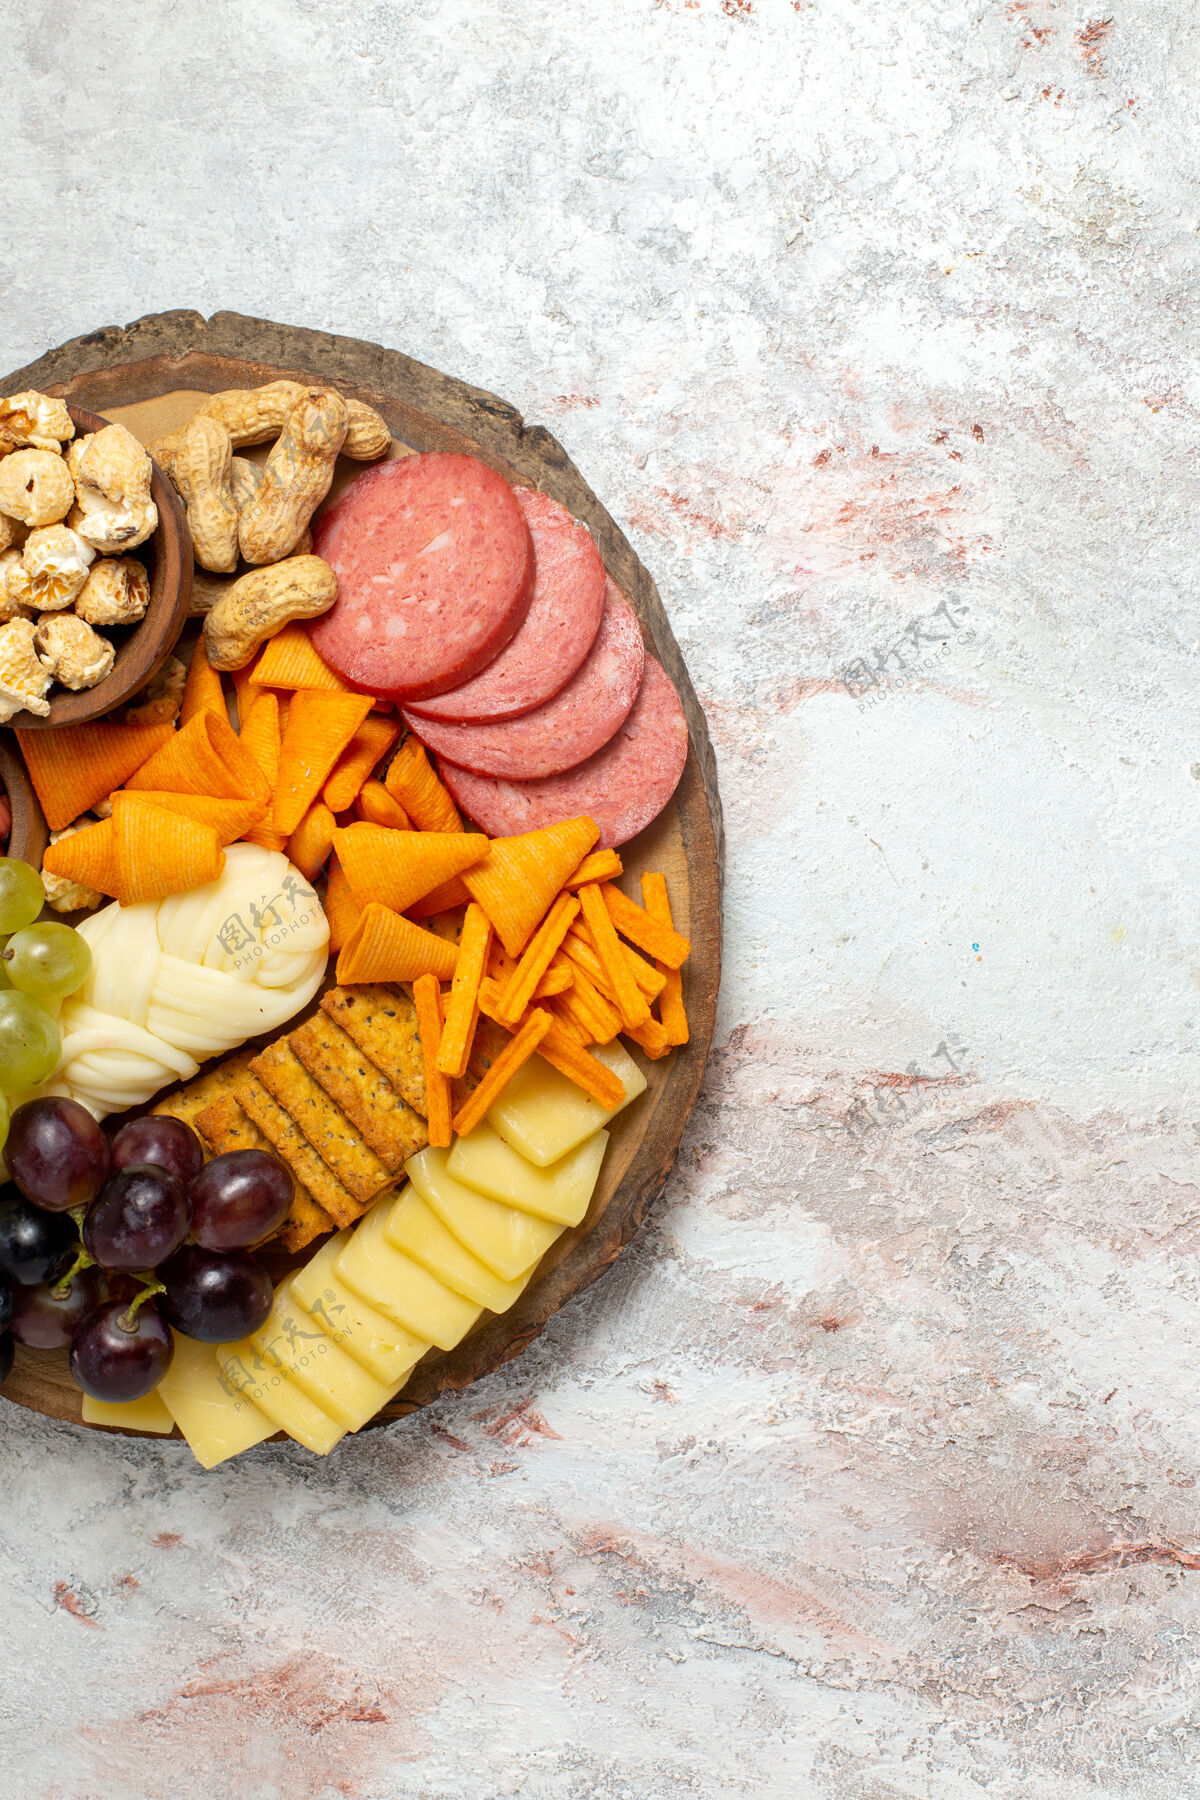 视图俯视图不同的零食坚果cips葡萄奶酪和香肠白色表面坚果零食餐食品水果蔬菜顶部零食